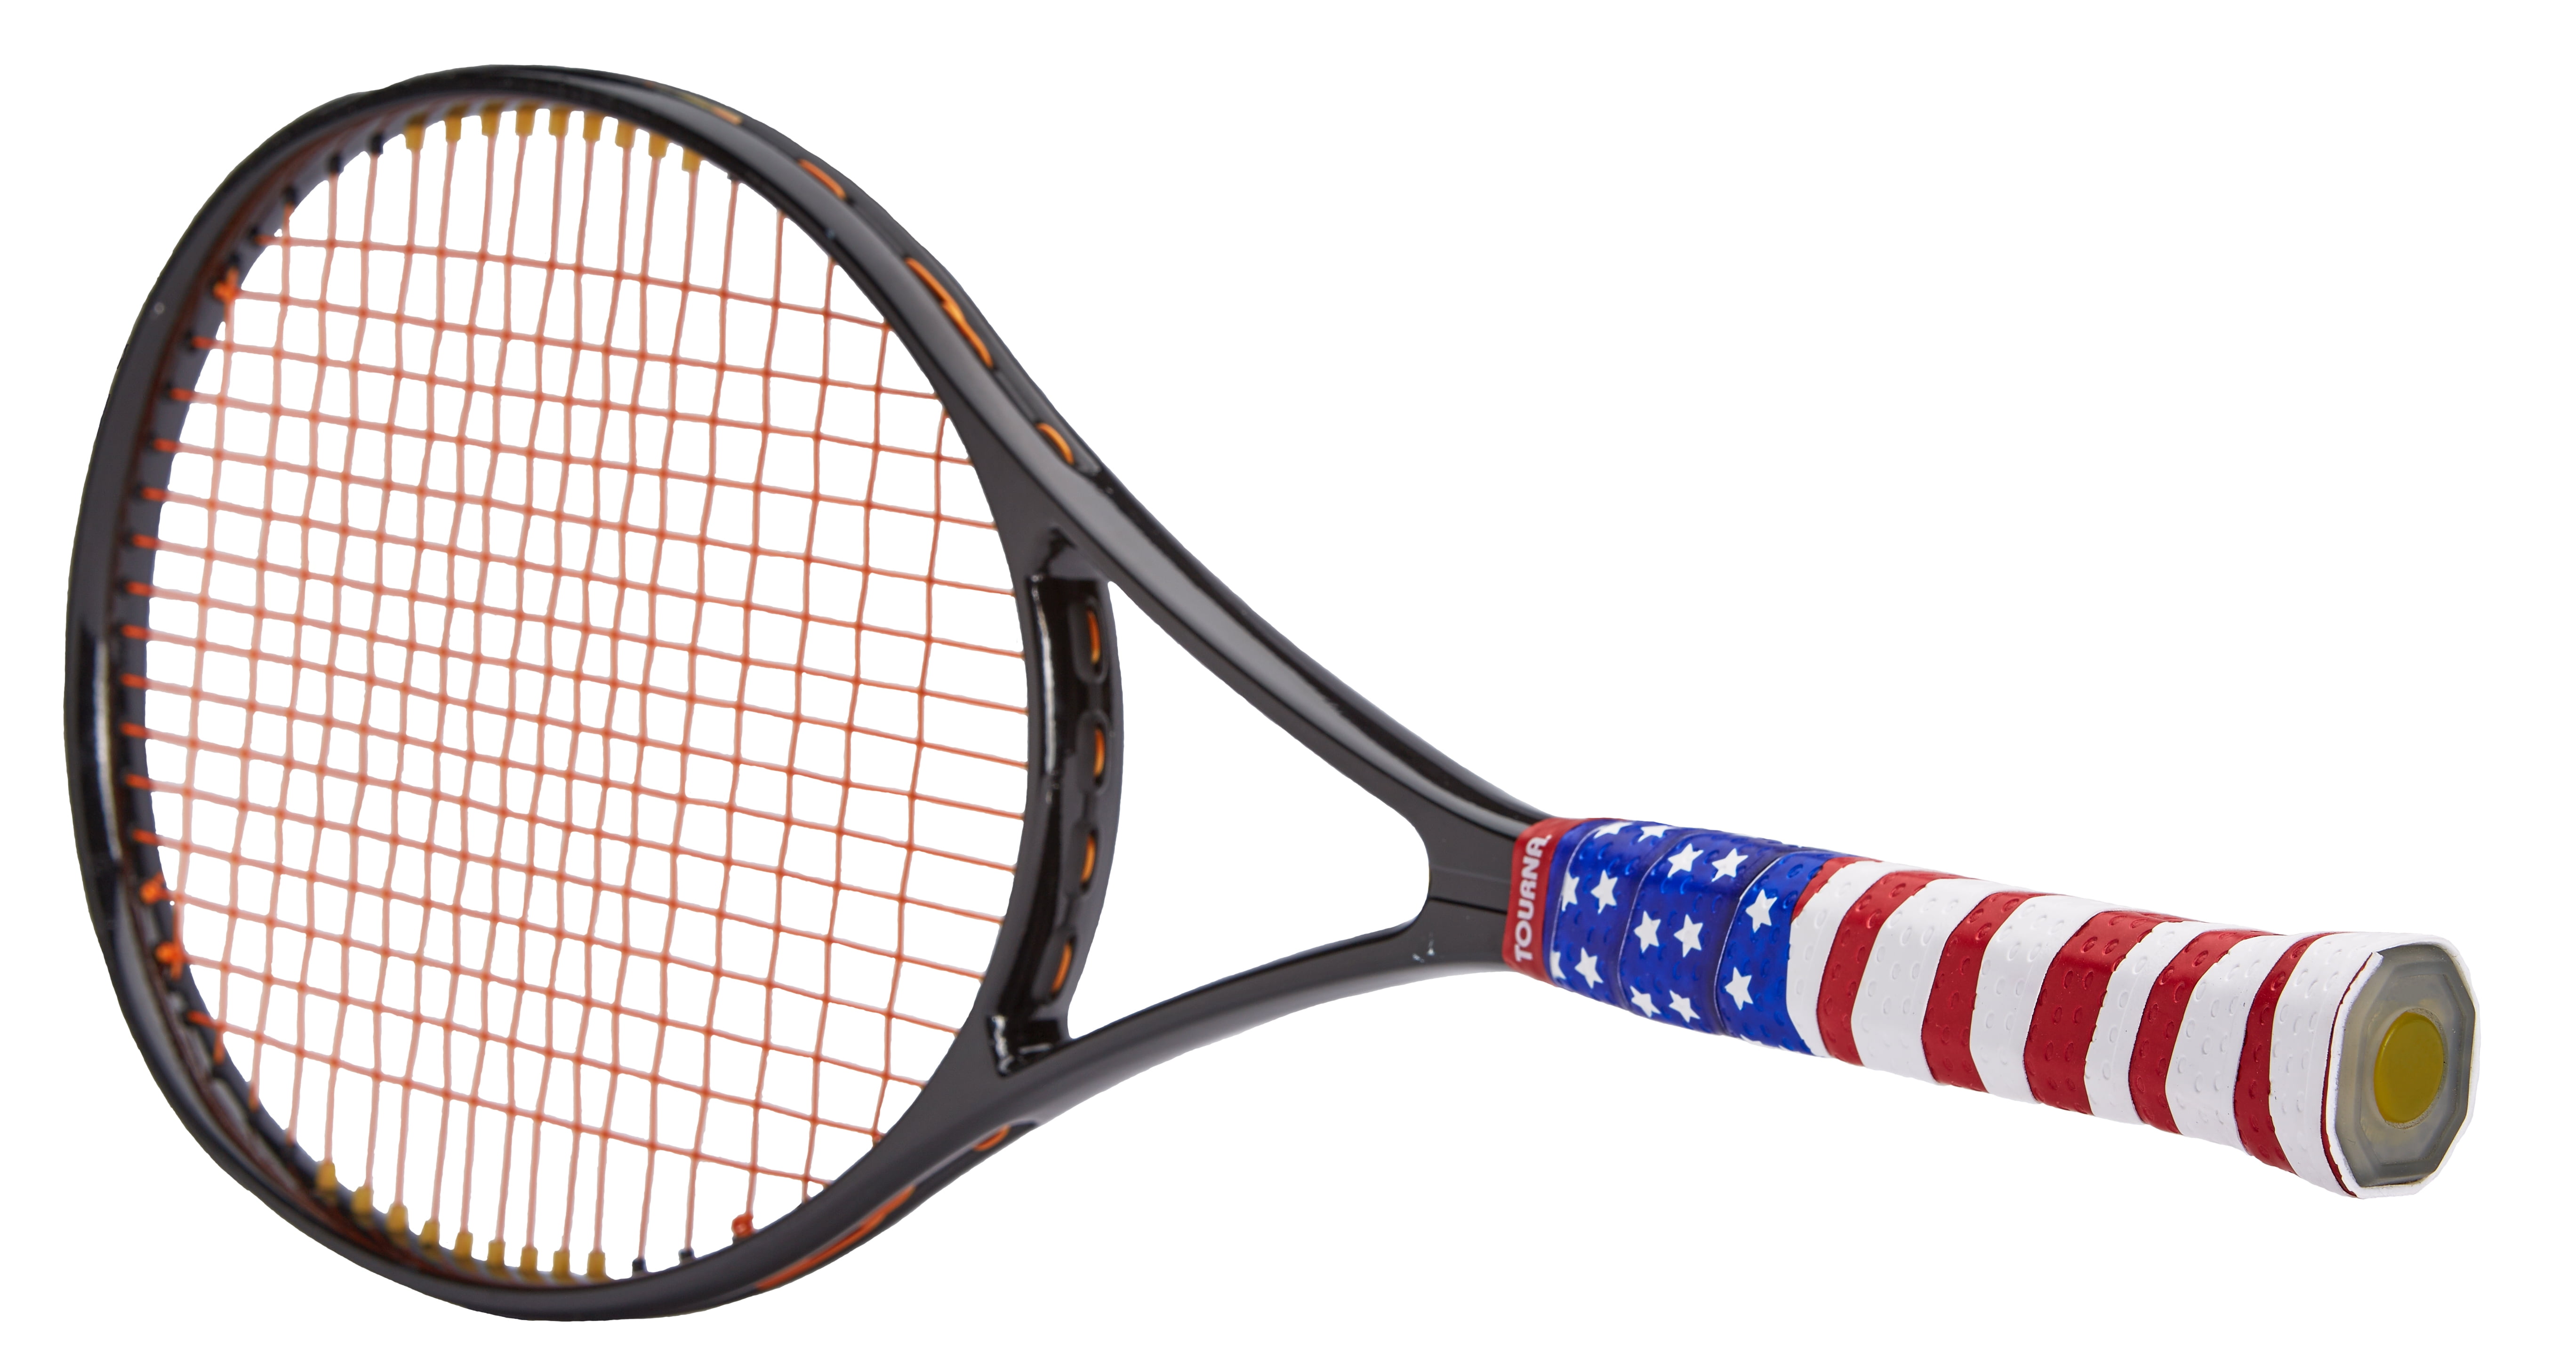 Wilson Pro Tennis Racquet Racket Overgrip Bucket Assorted WRZ401800 60Grips 